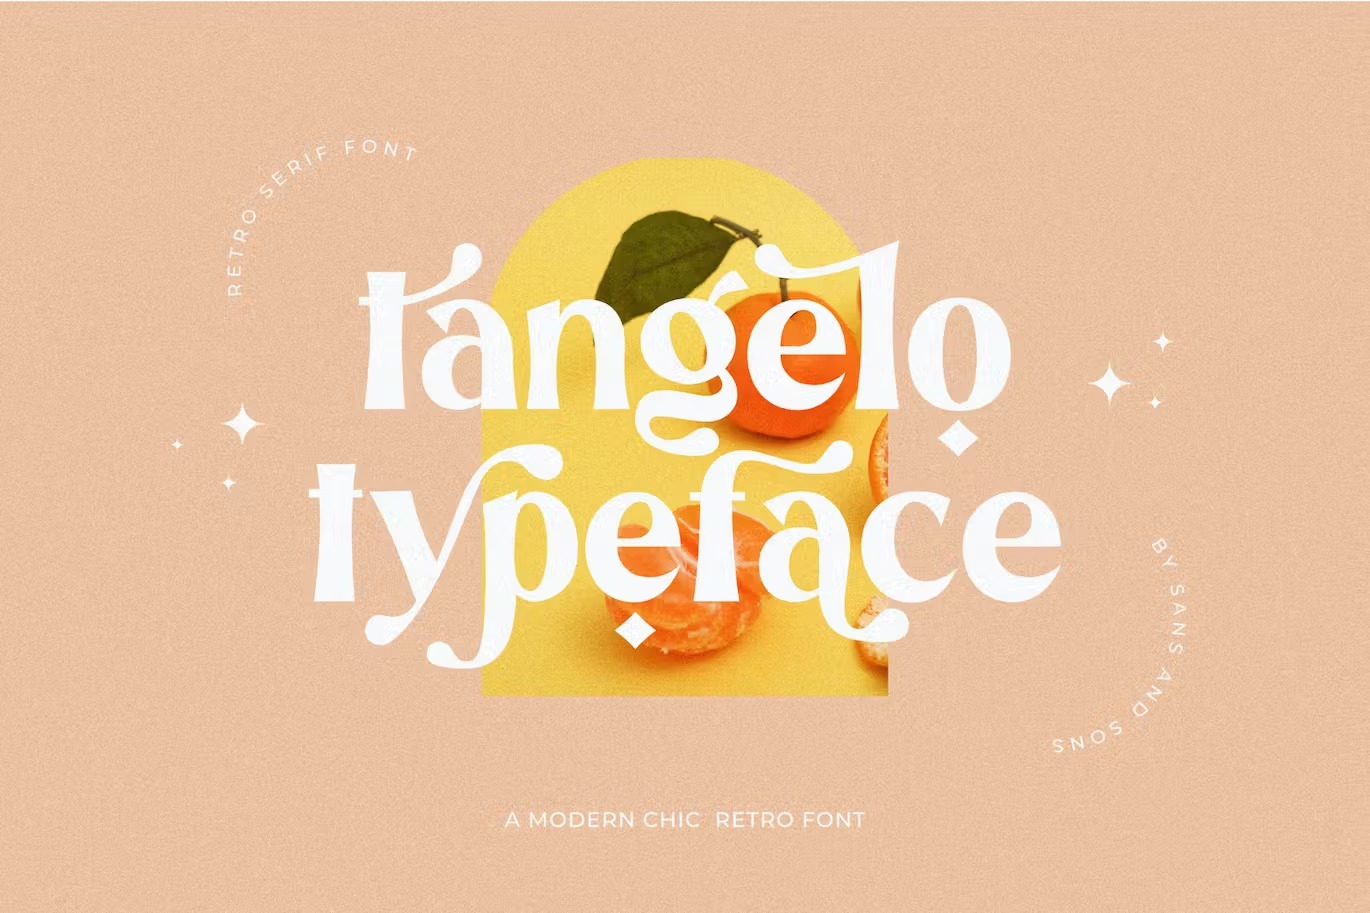 Tangelo Font by Richarde Leei on Dribbble